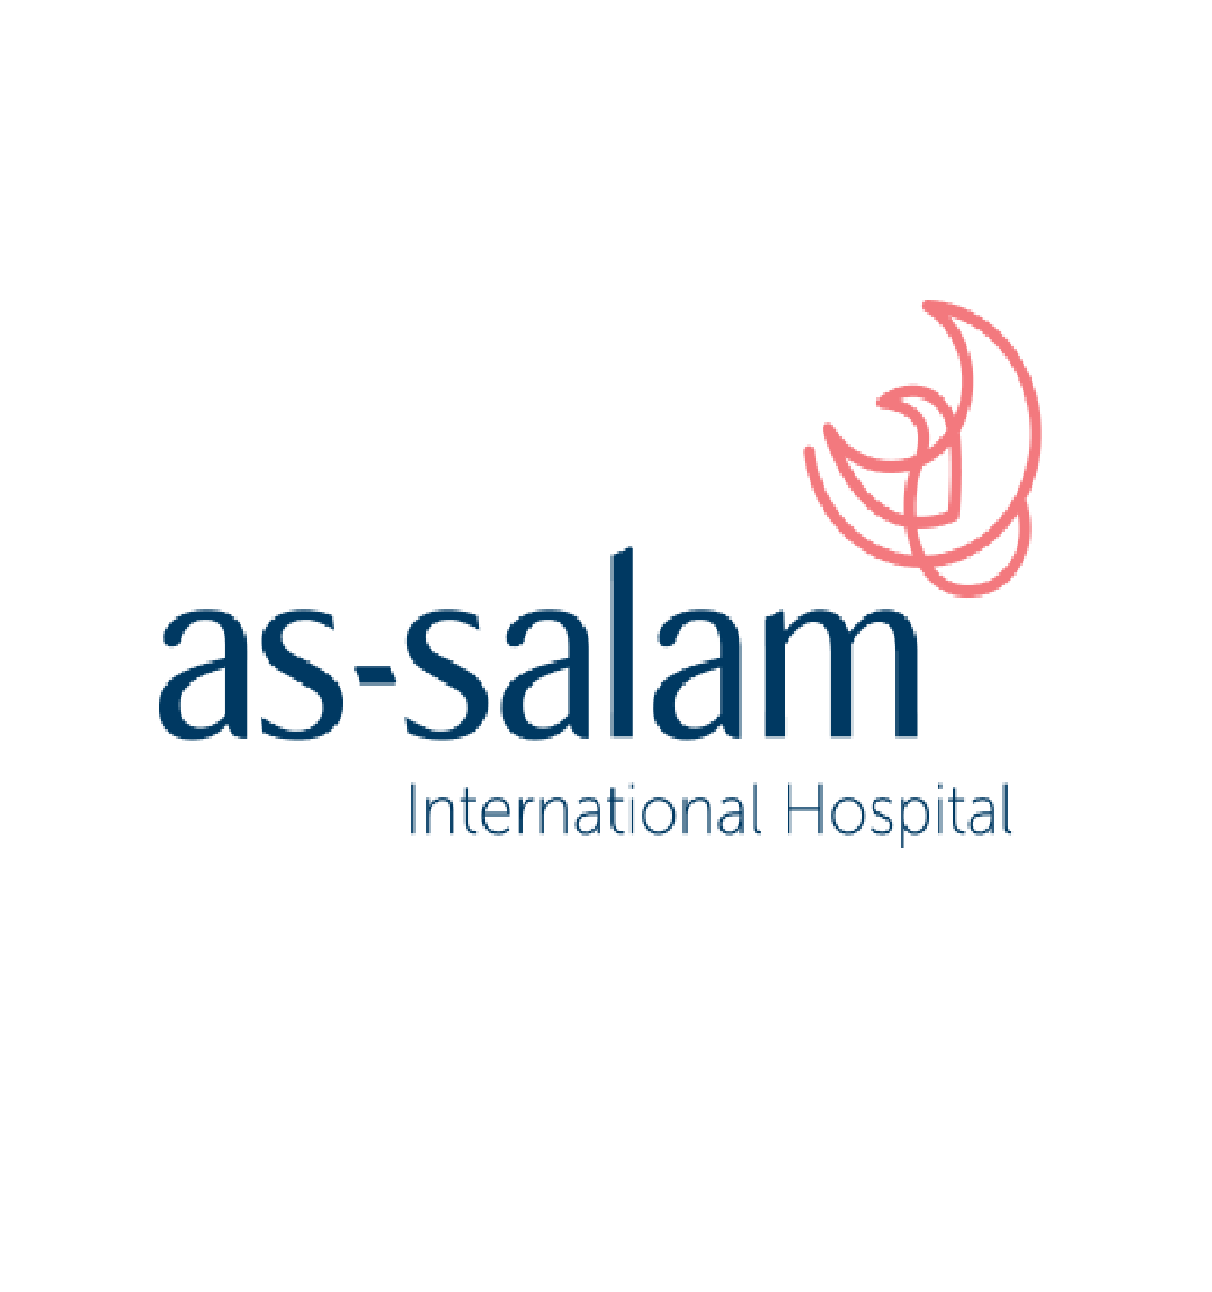 Assalam International Hospital